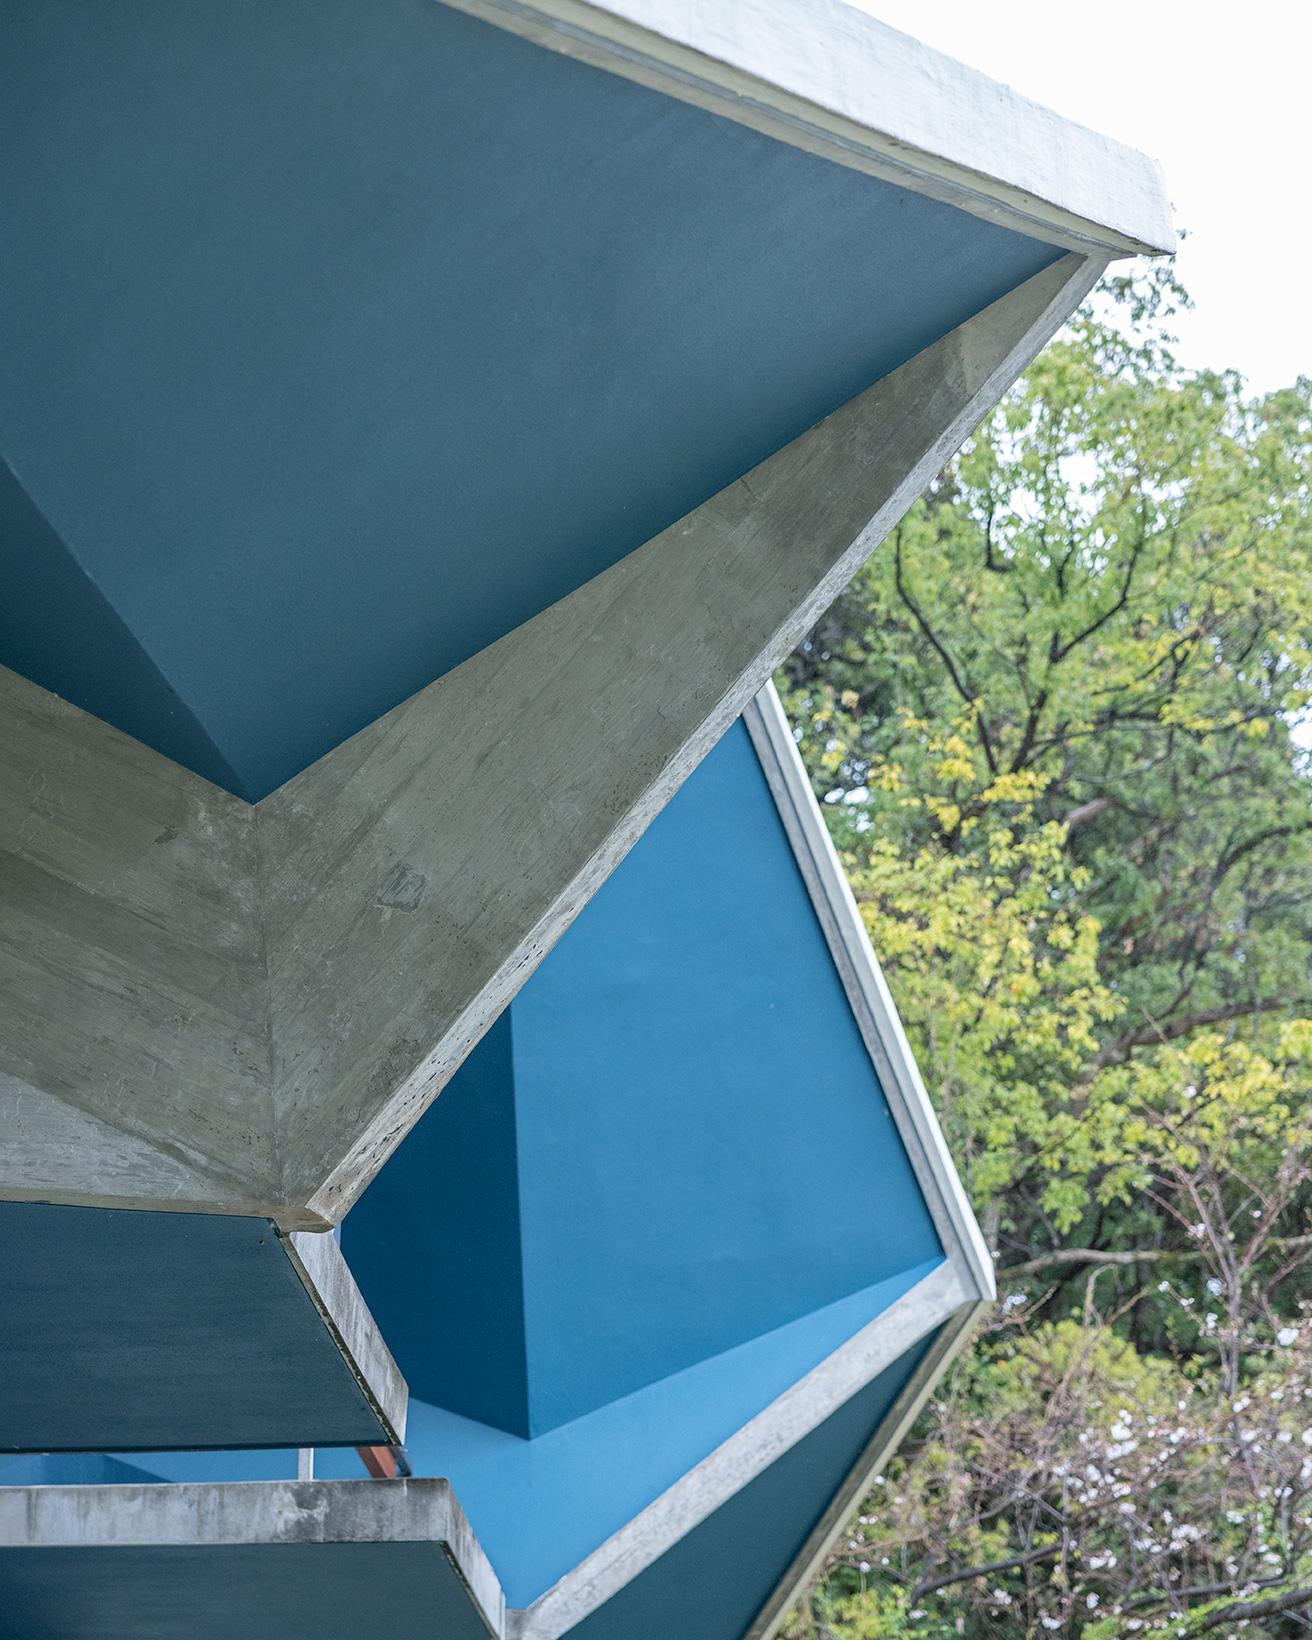 凹凸のある複雑な形状の折板屋根。photo_Norio Kidera